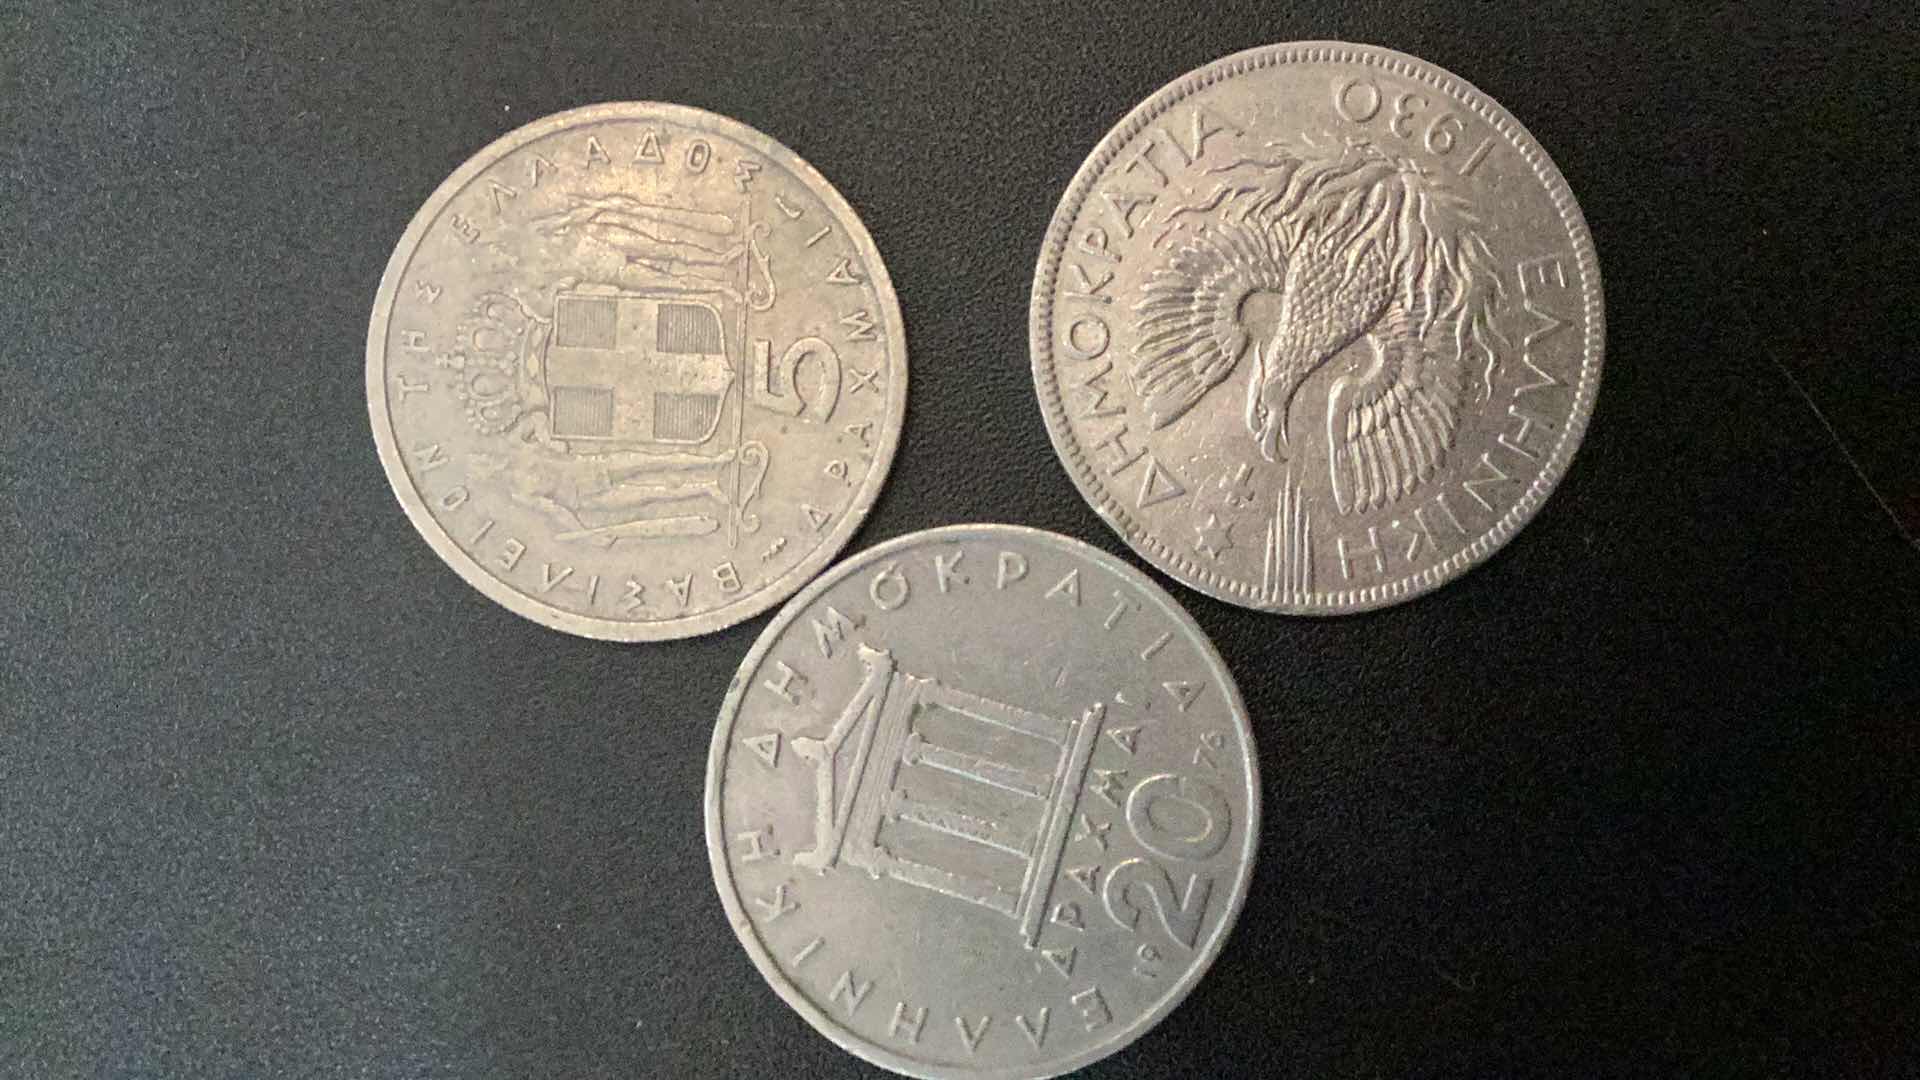 Photo 1 of 3 COLLECTIBLE COINS - GREECE 1930, 1954, 1976